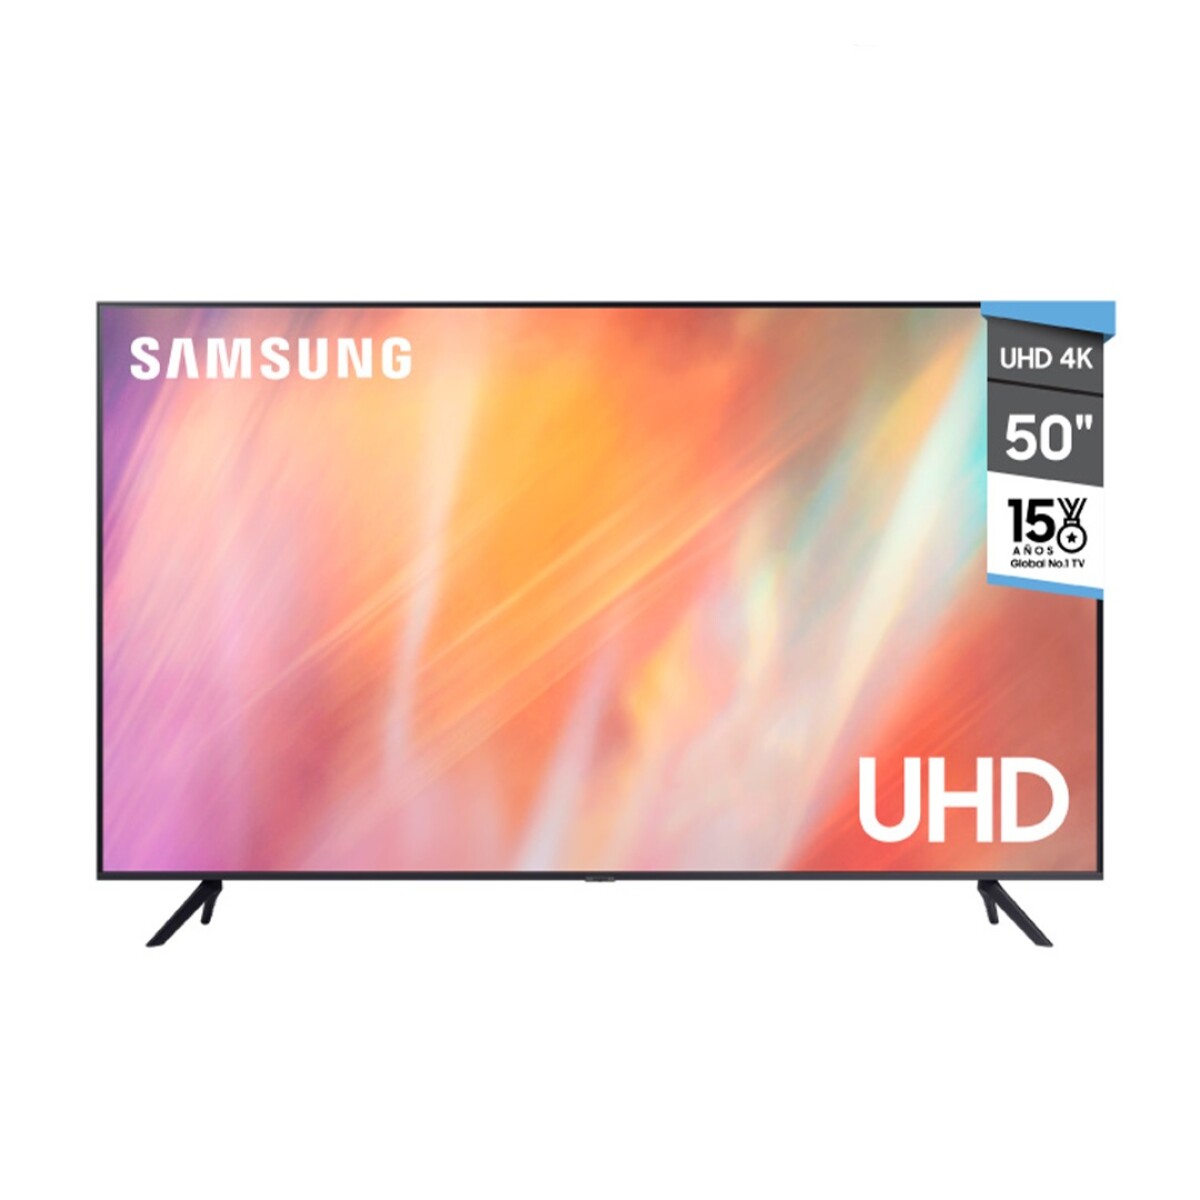 Smart Tv Samsung UN50AU7000 50 Uhd 4K Led - 001 